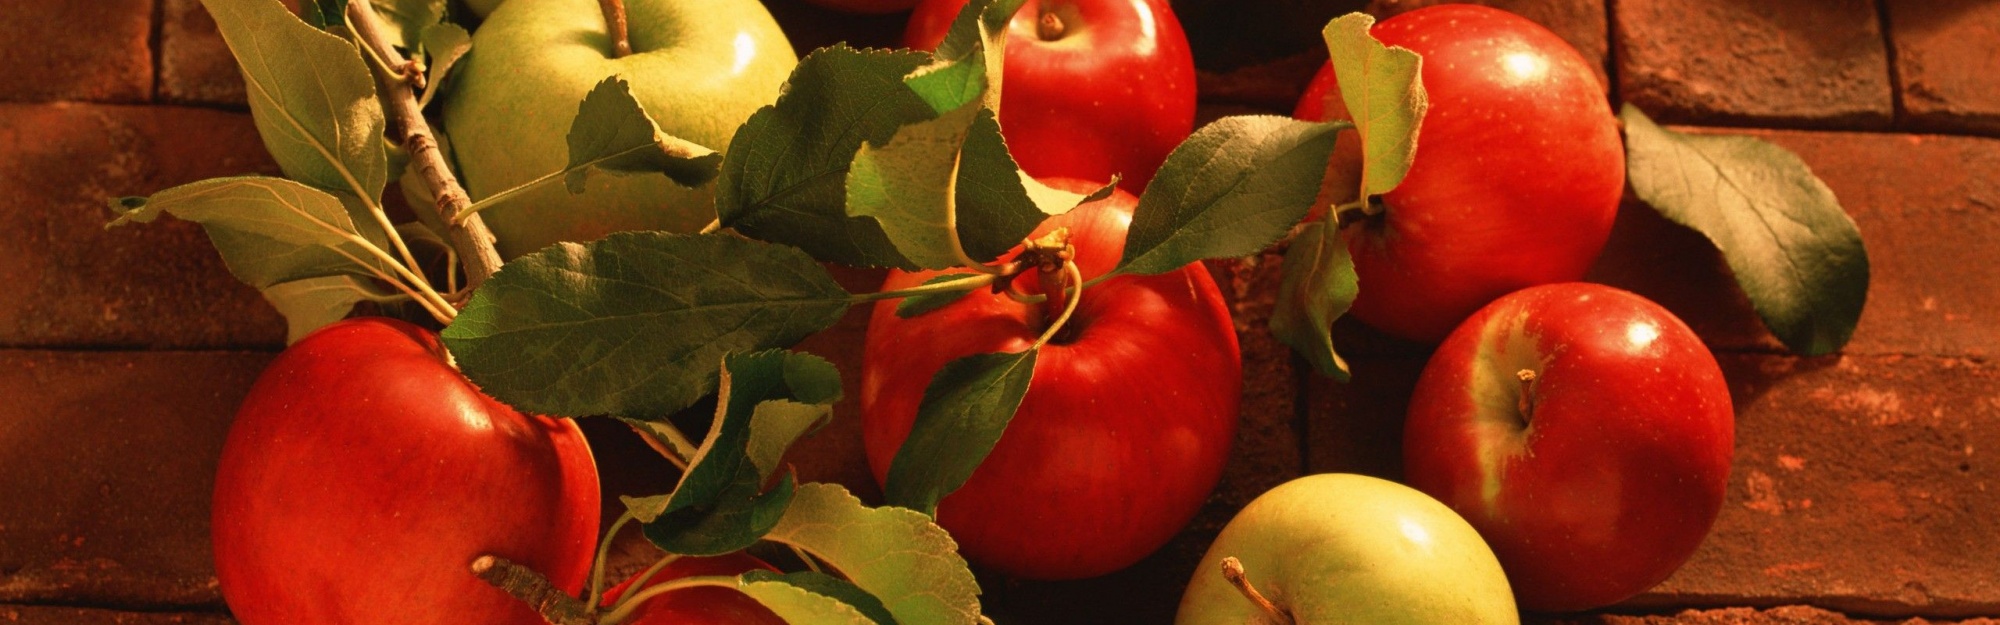 Fruits Food Bricks Apples